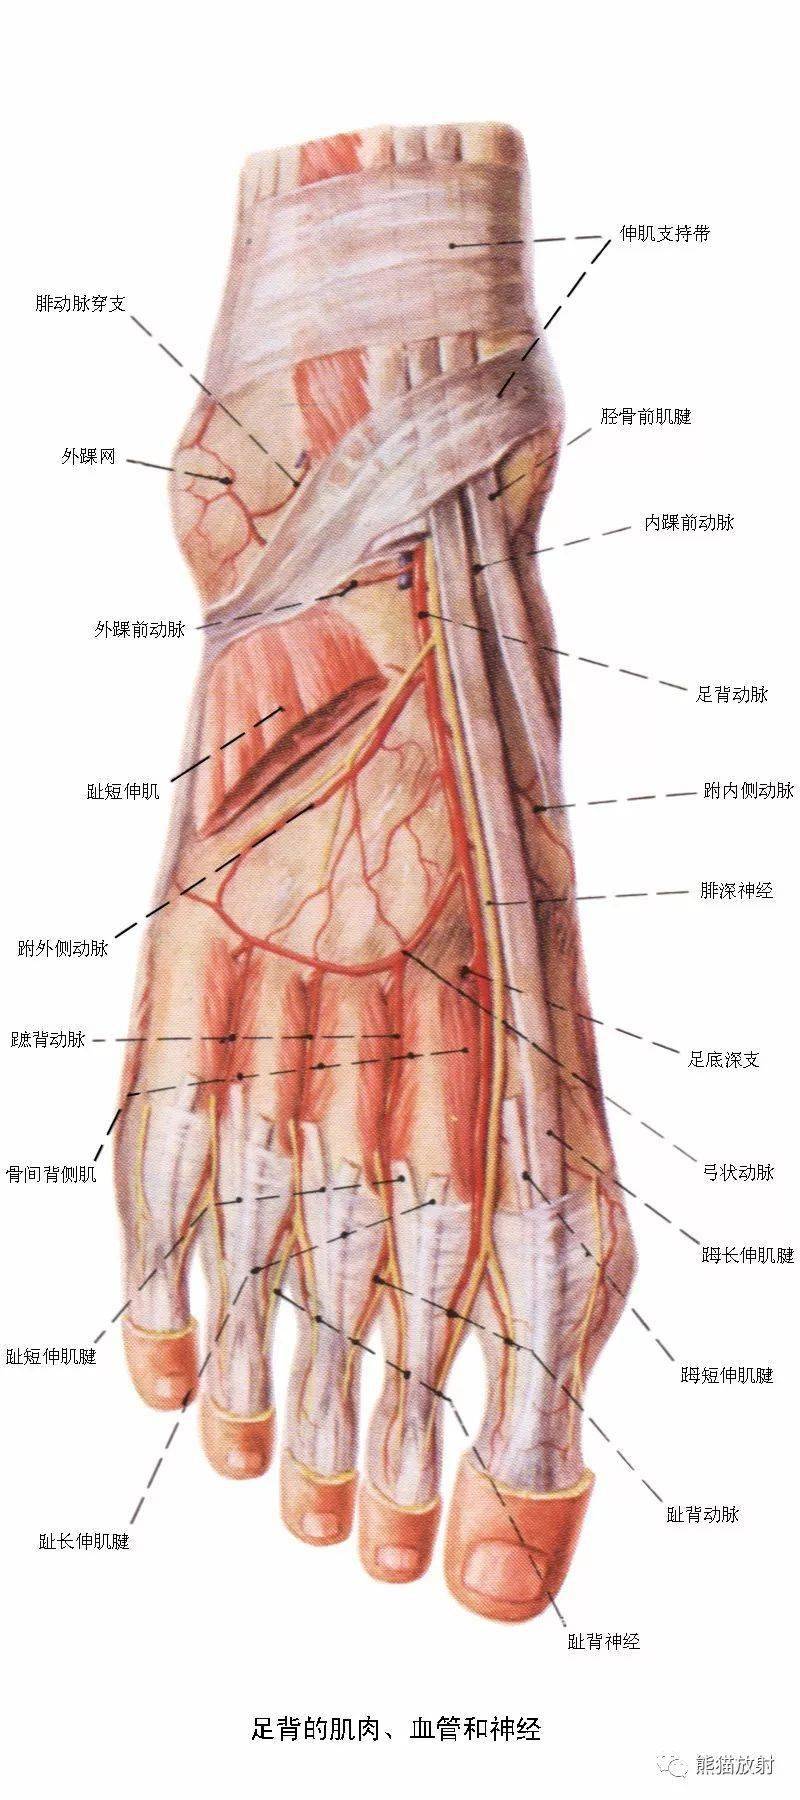 必点收藏丨下肢血管(系统解剖 cta图谱)_动脉